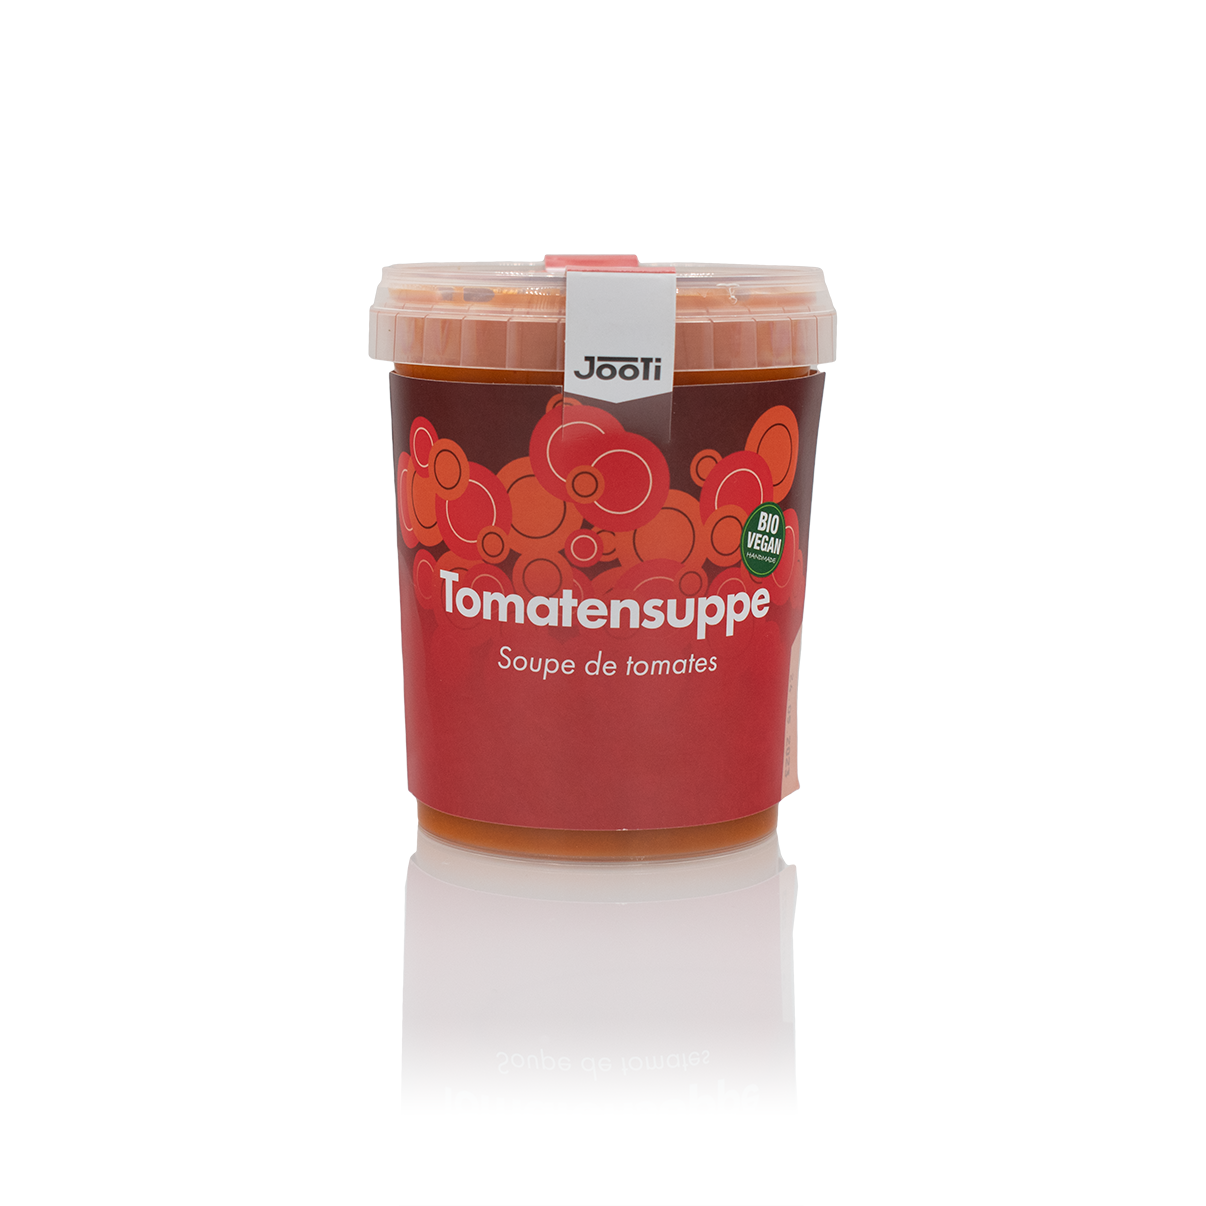 Abbildung der veganen Tomatensuppe in durchsichtigem Kunststoff und weißem Deckel.